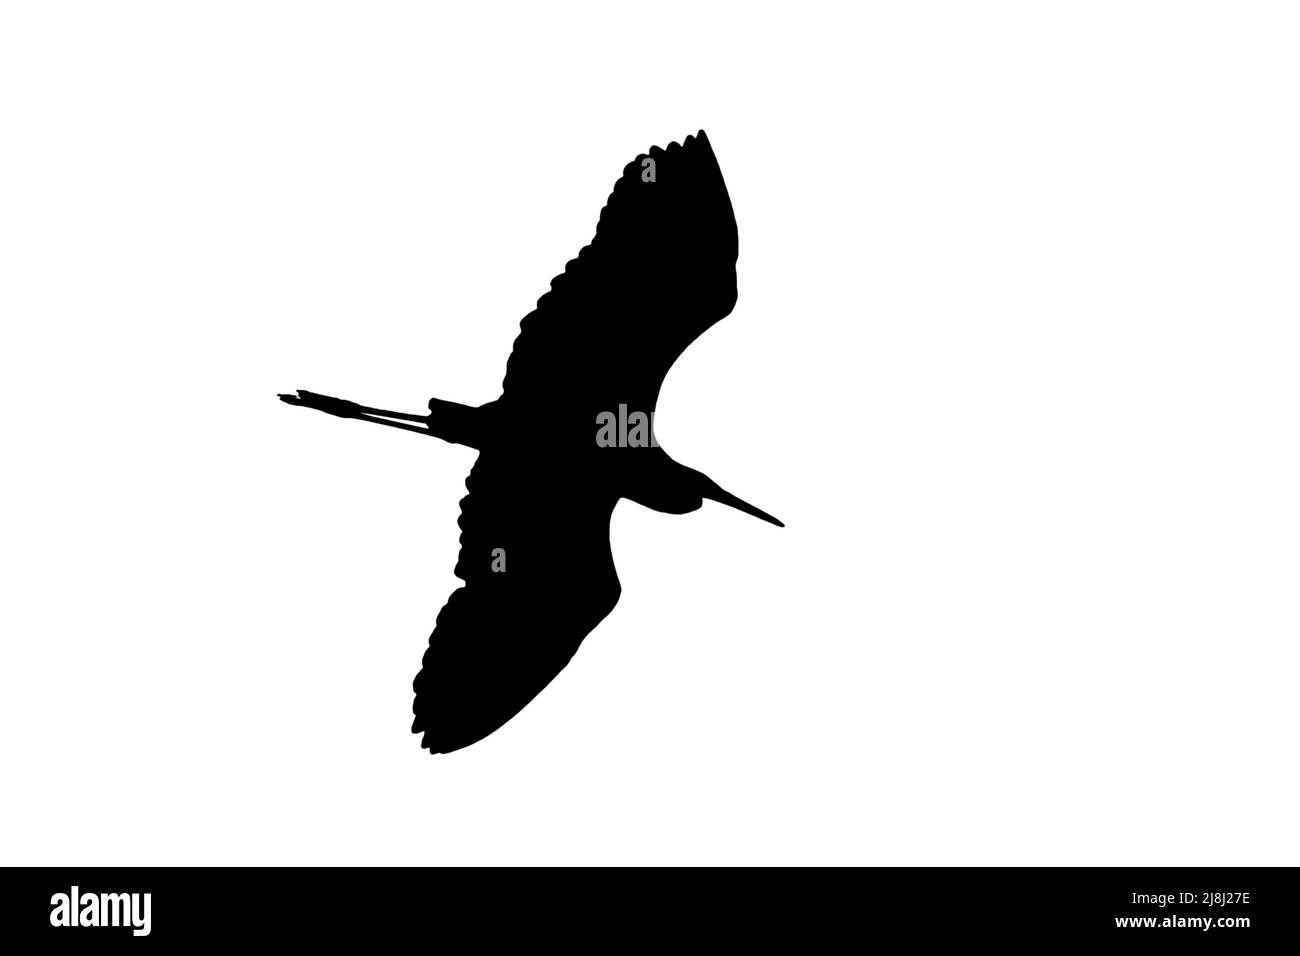 Silueta de gran garza blanca / garza común (Ardea alba) en vuelo contorneado sobre fondo blanco para mostrar alas, cabeza y cola formas Foto de stock